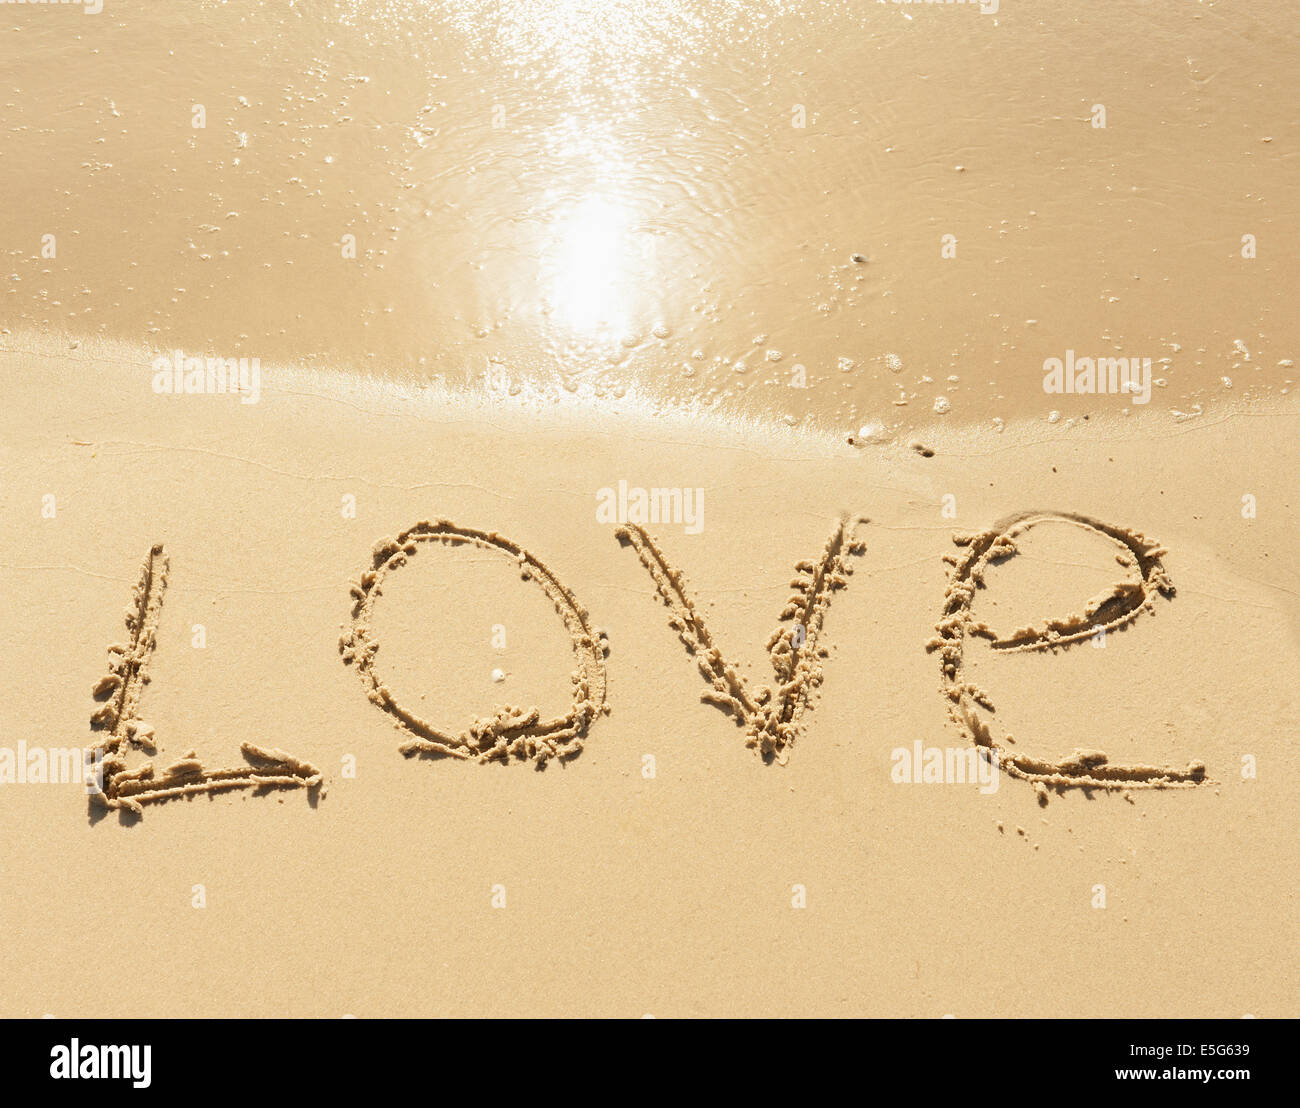 Wort-Liebe am Sand Strand - Liebe und romantische Konzept Stockfoto